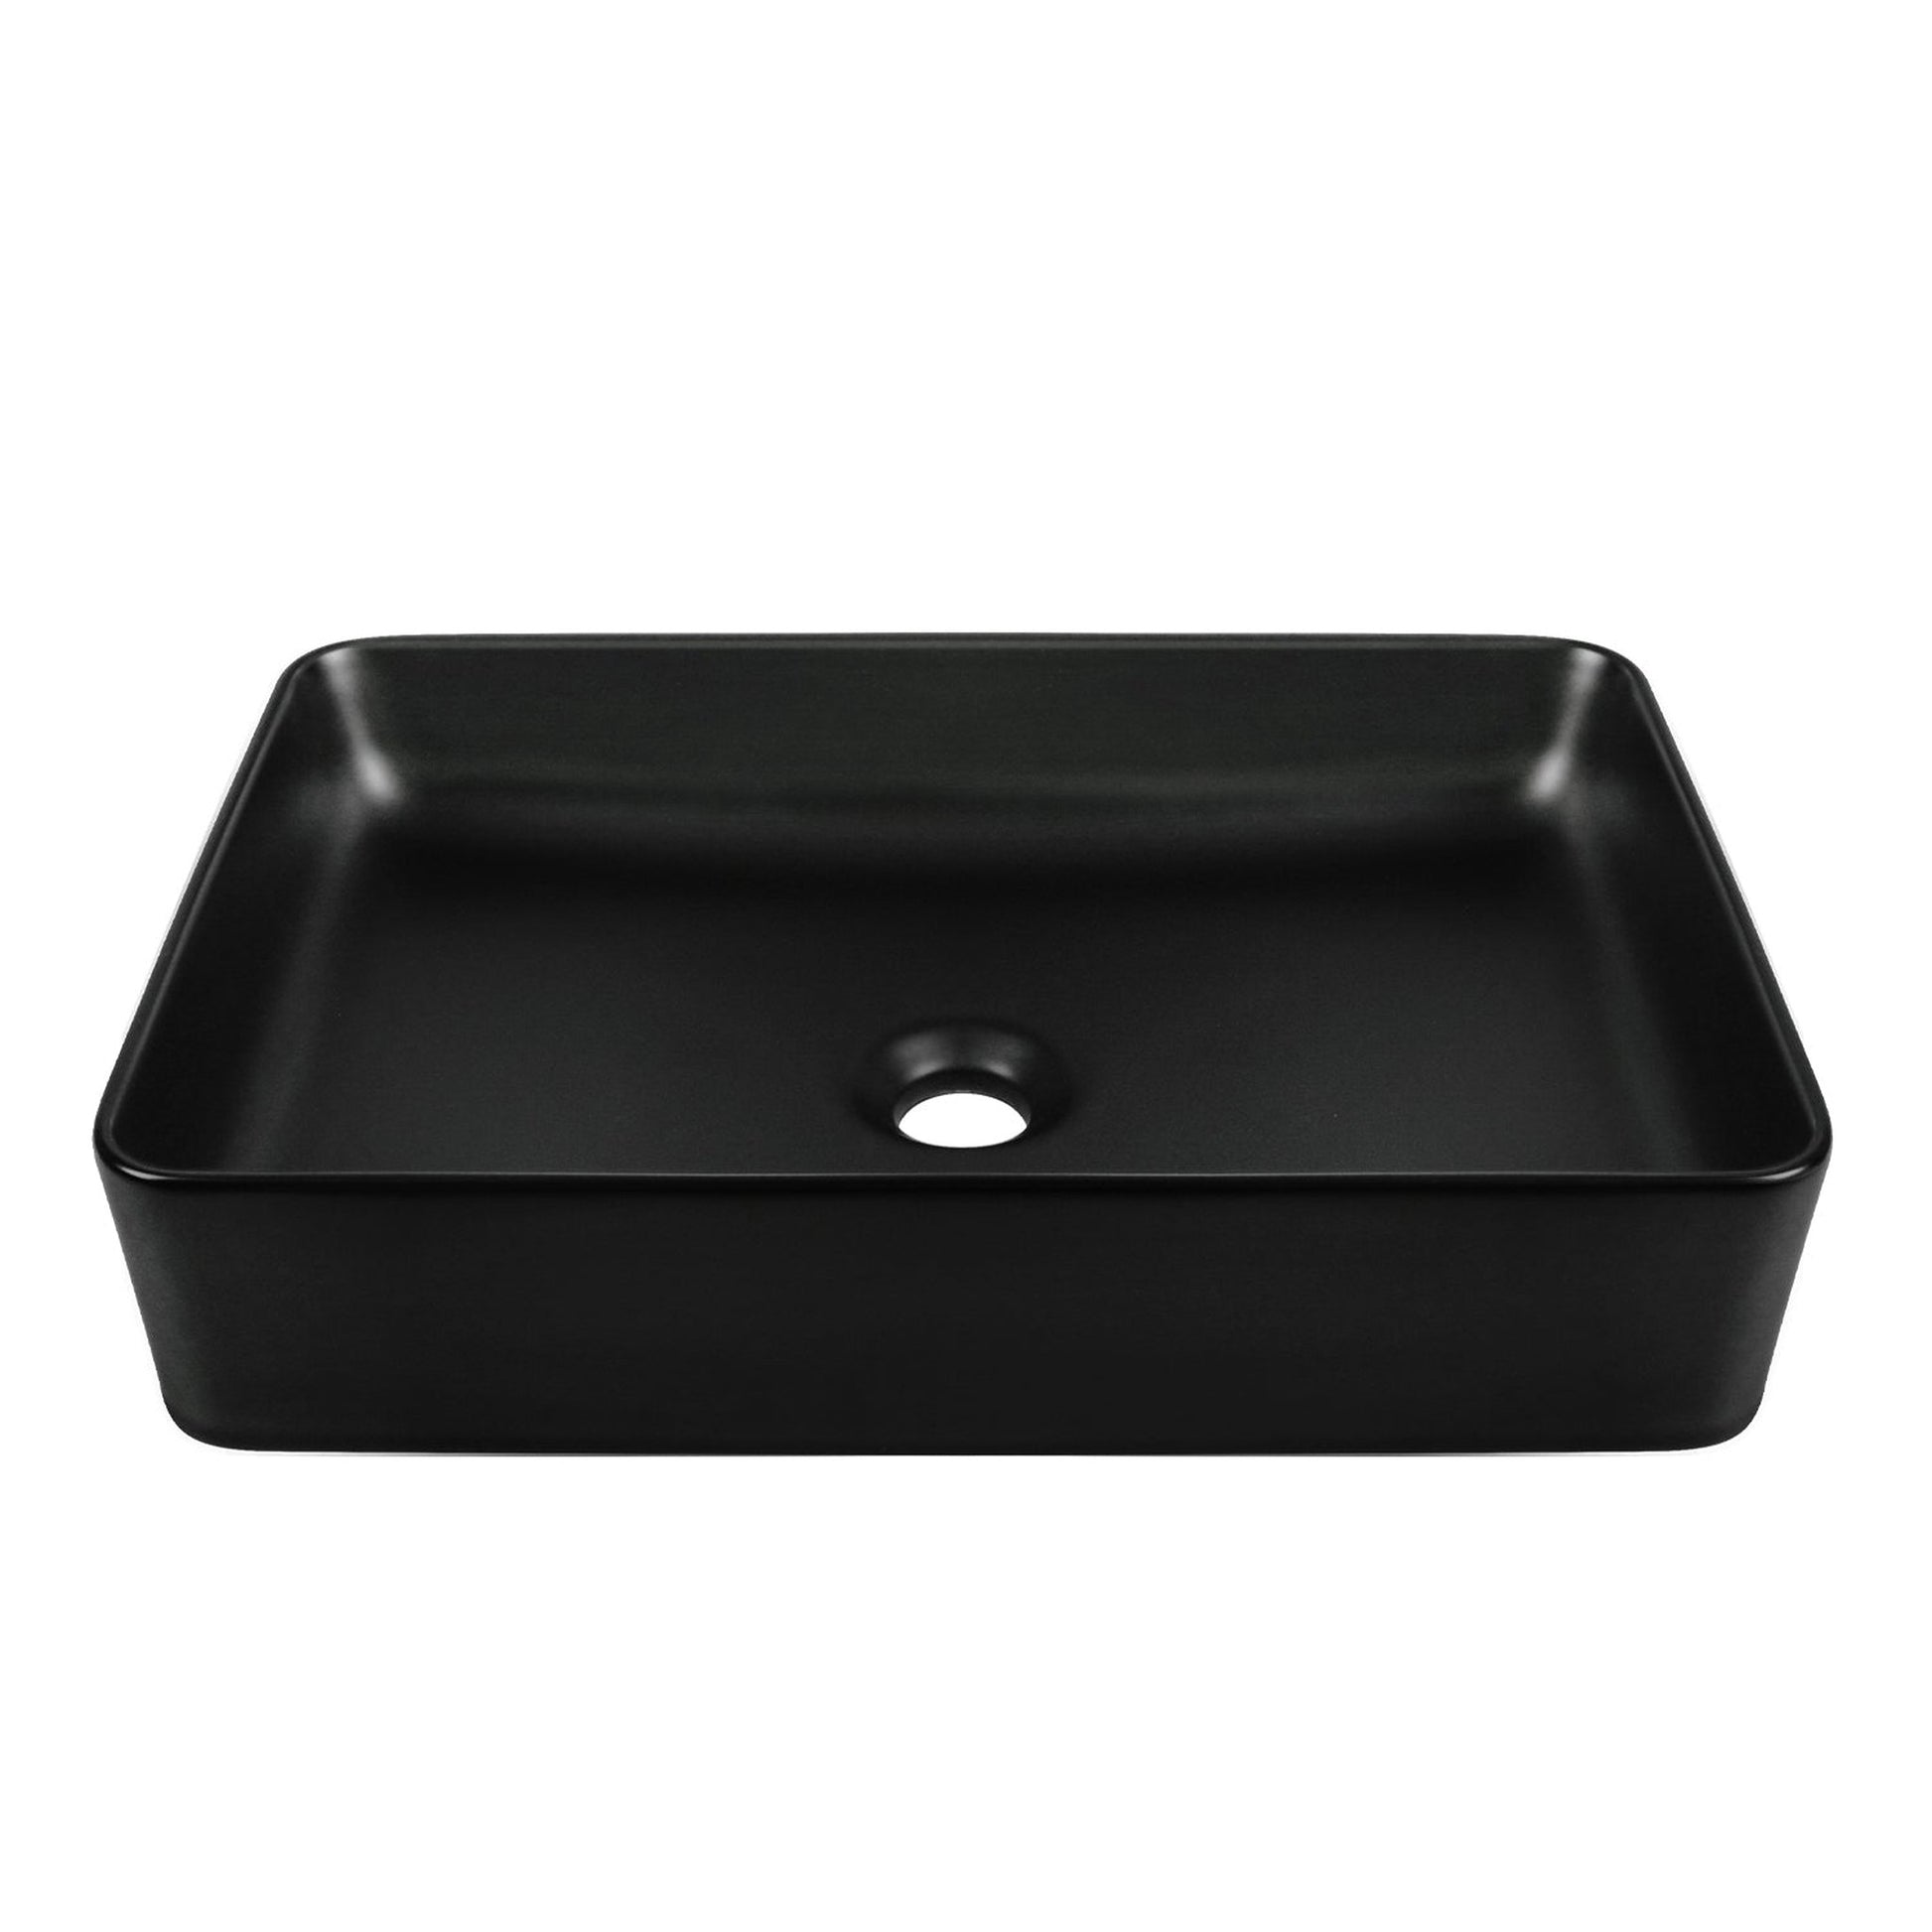 DeerValley Ally 16" Single Rectangular Black Ceramic Sleek Vessel Bathroom Sink